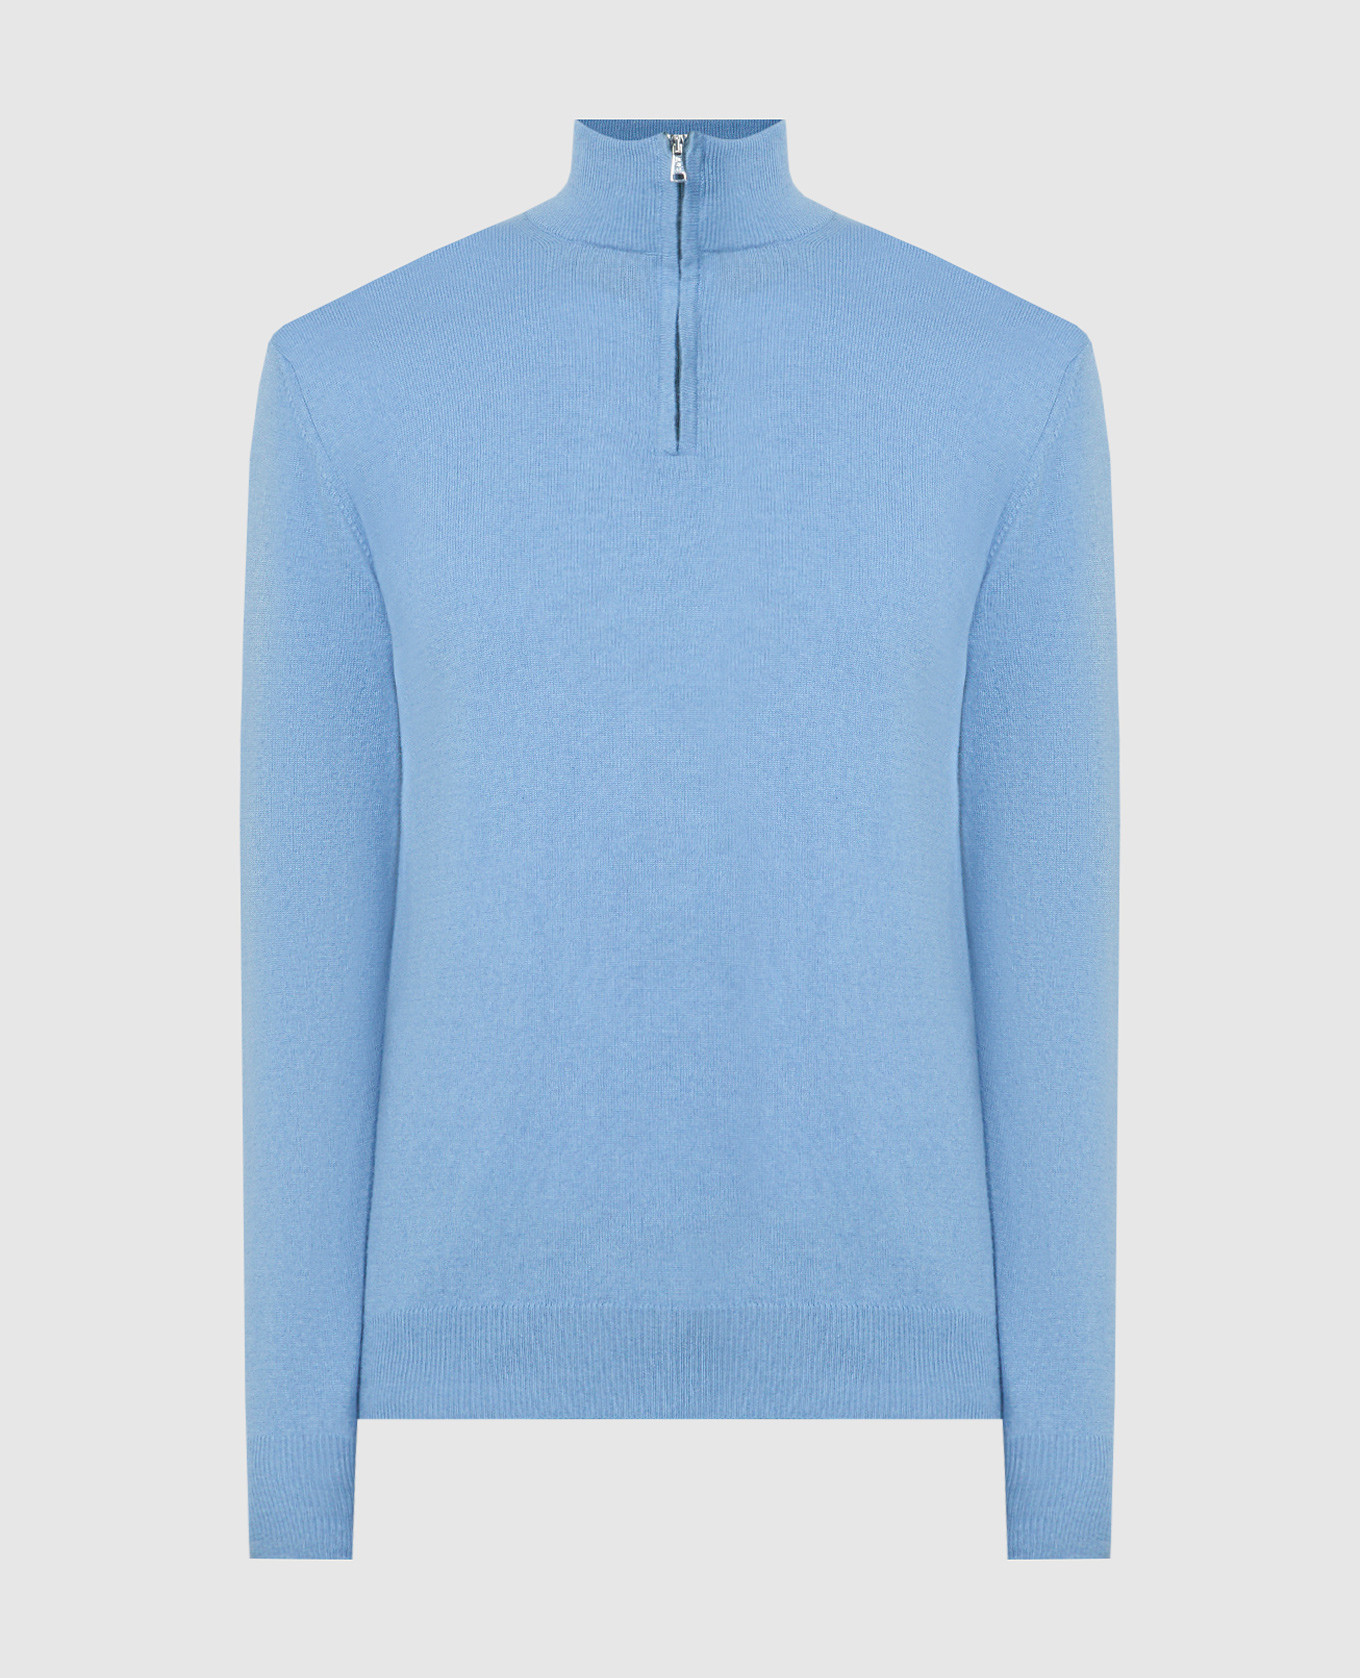 Blue cashmere jumper with zipper